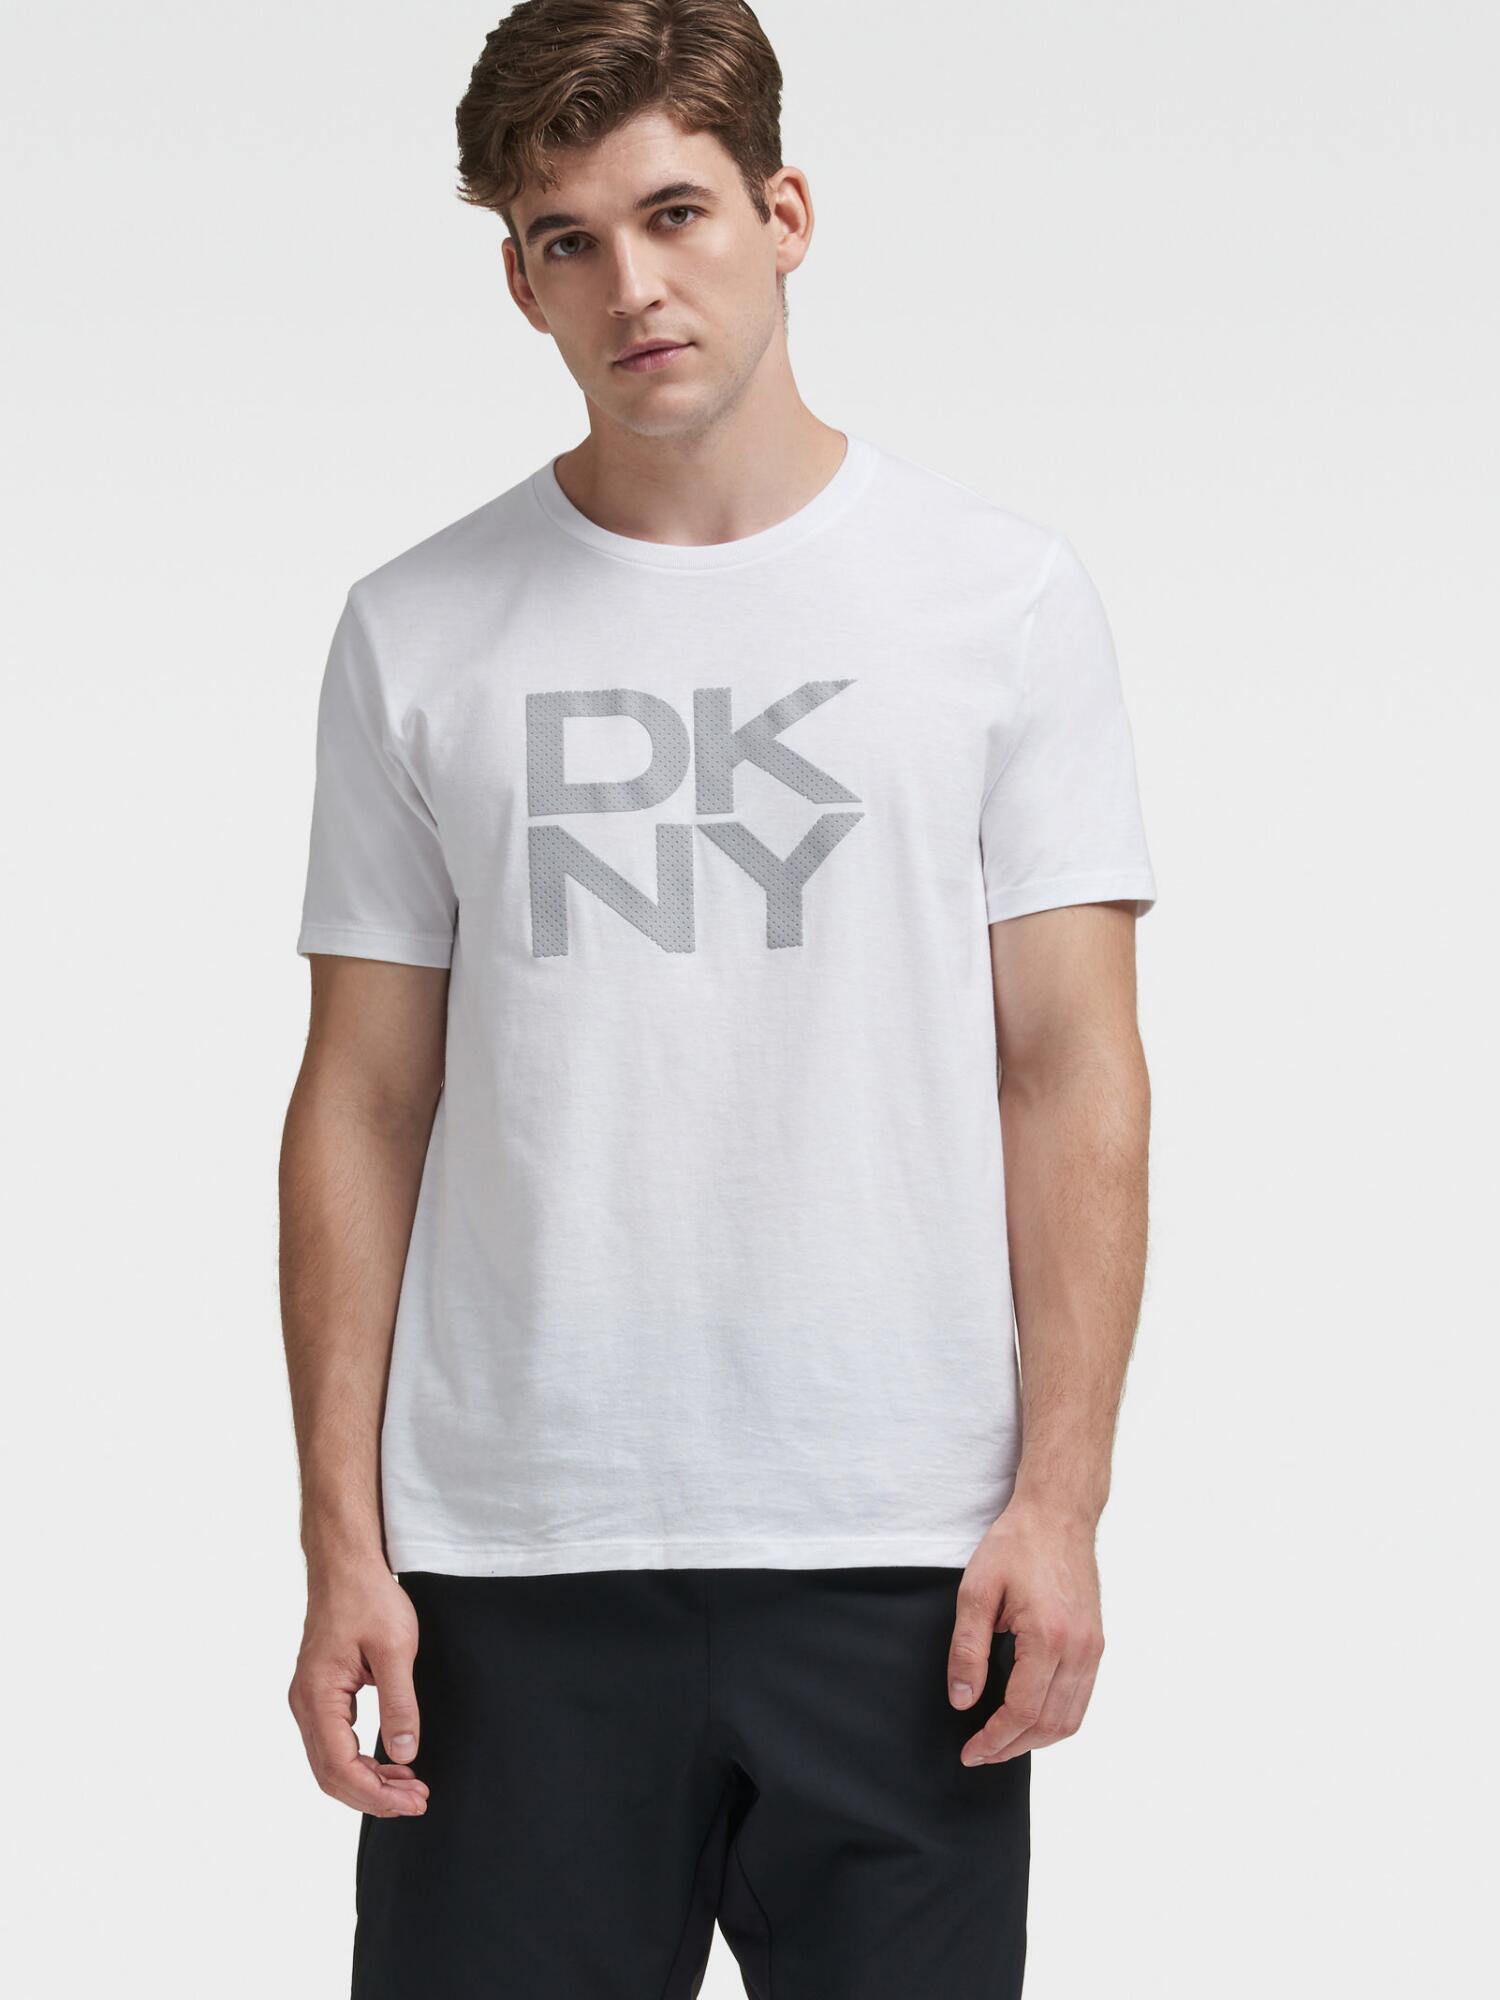 Donna Karan Dkny Men's Stacked Logo Crew Neck Tee - In White | ModeSens